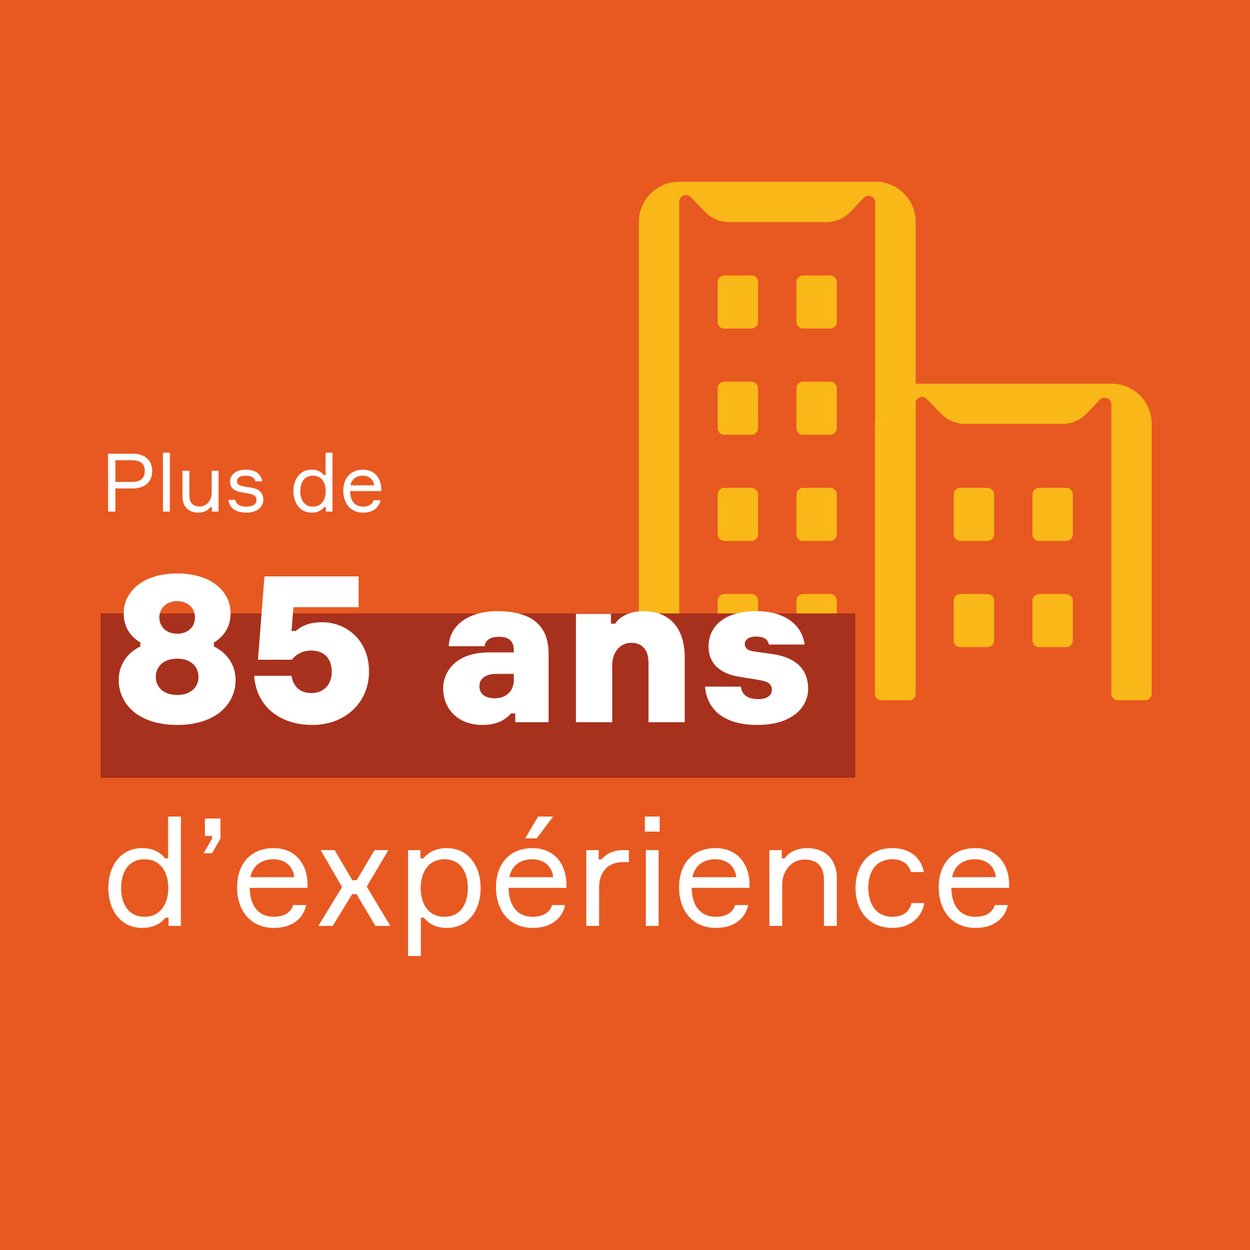 Bloc orange avec le texte "Plus de 85 ans d'expérience". 